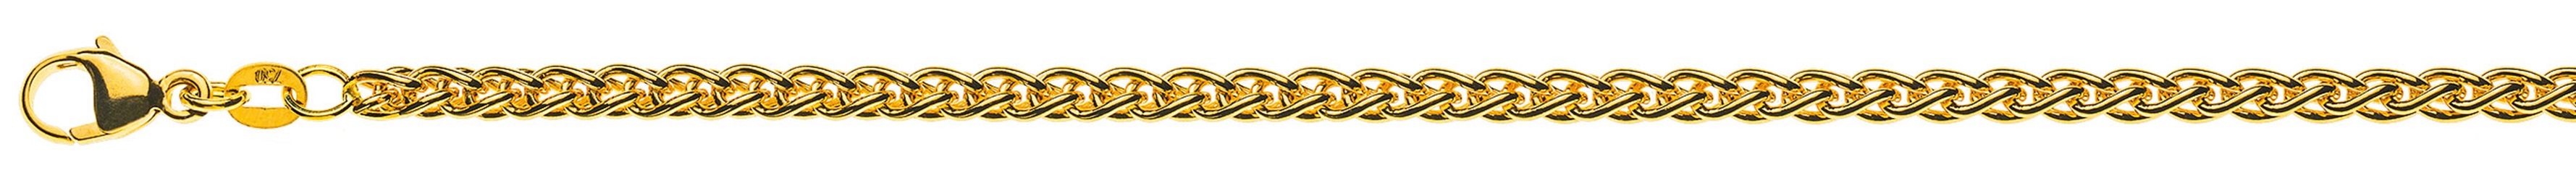 AURONOS Prestige Halskette Gelbgold 18K Zopfkette 50cm 3.3mm